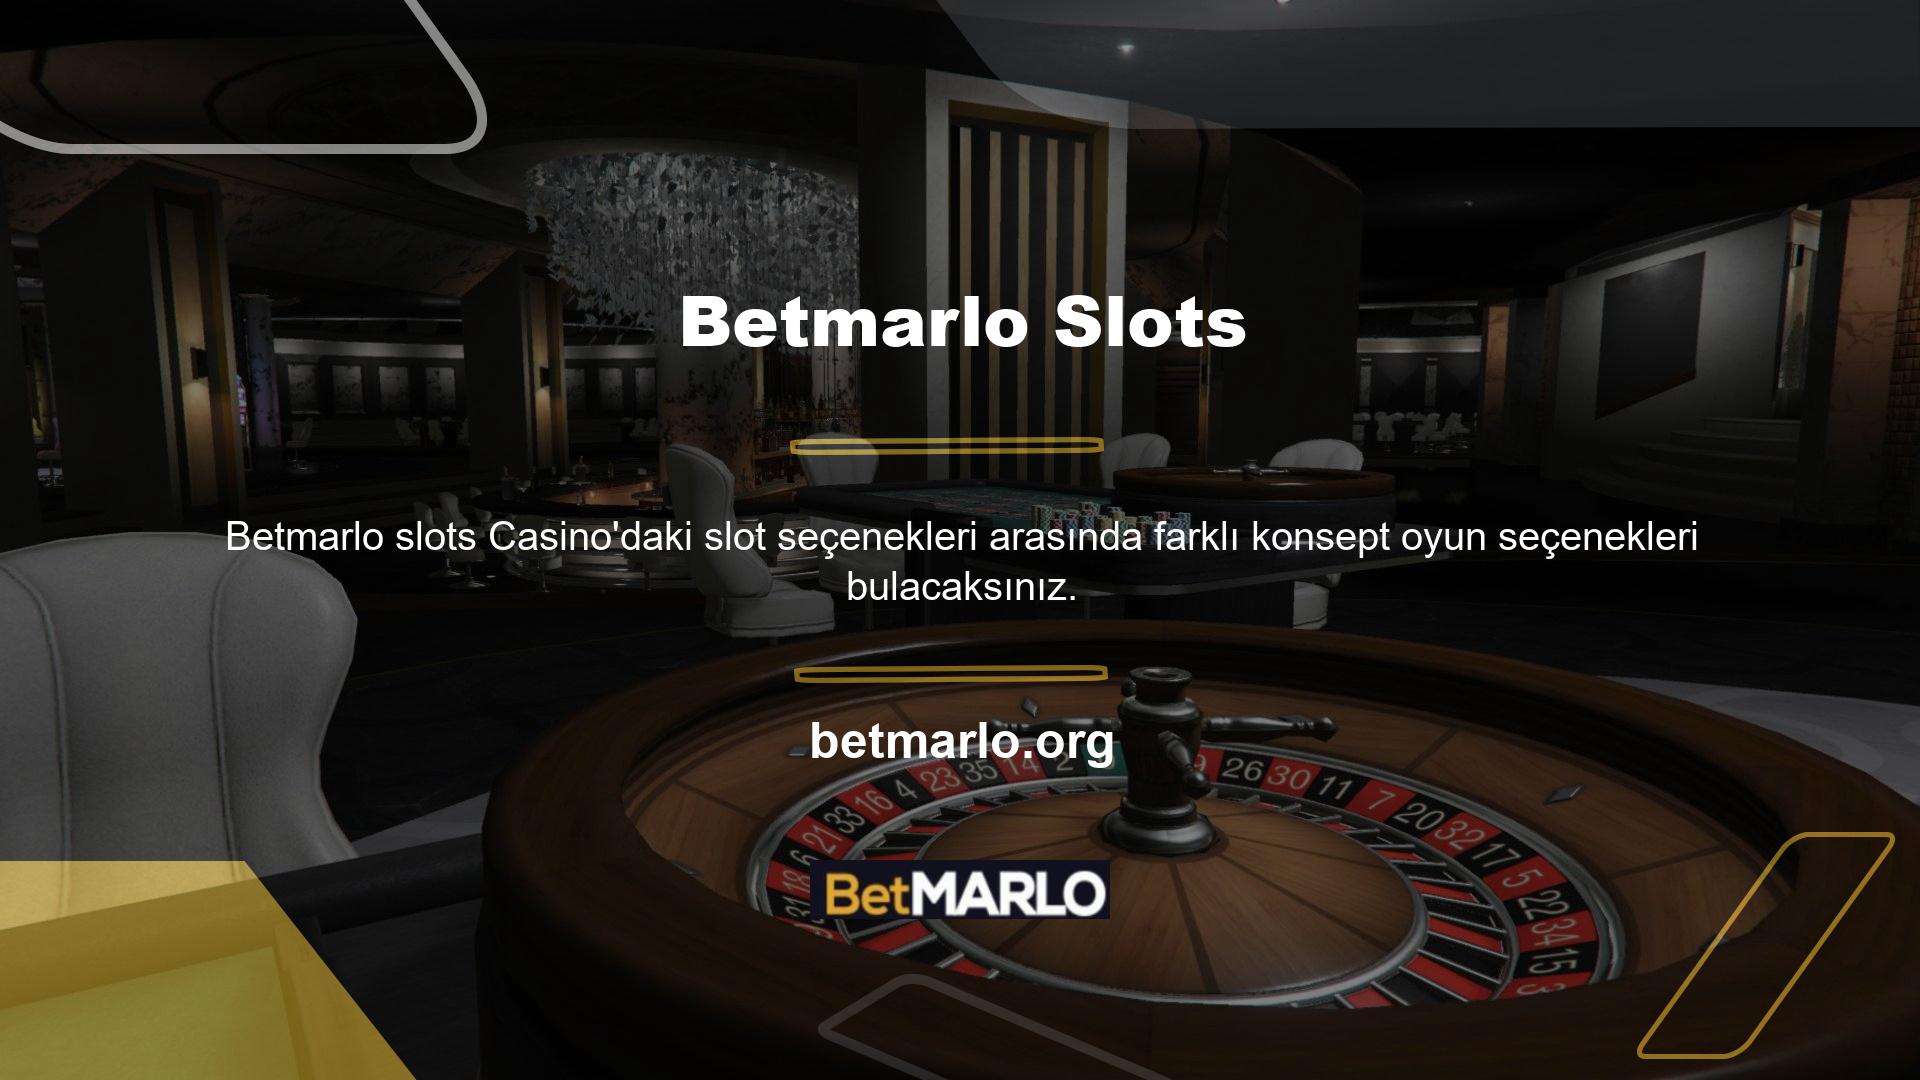 Oyun türlerini görüntülemek için bahis sitesi ana sayfasındaki Casino menüsüne tıklamanız yeterlidir